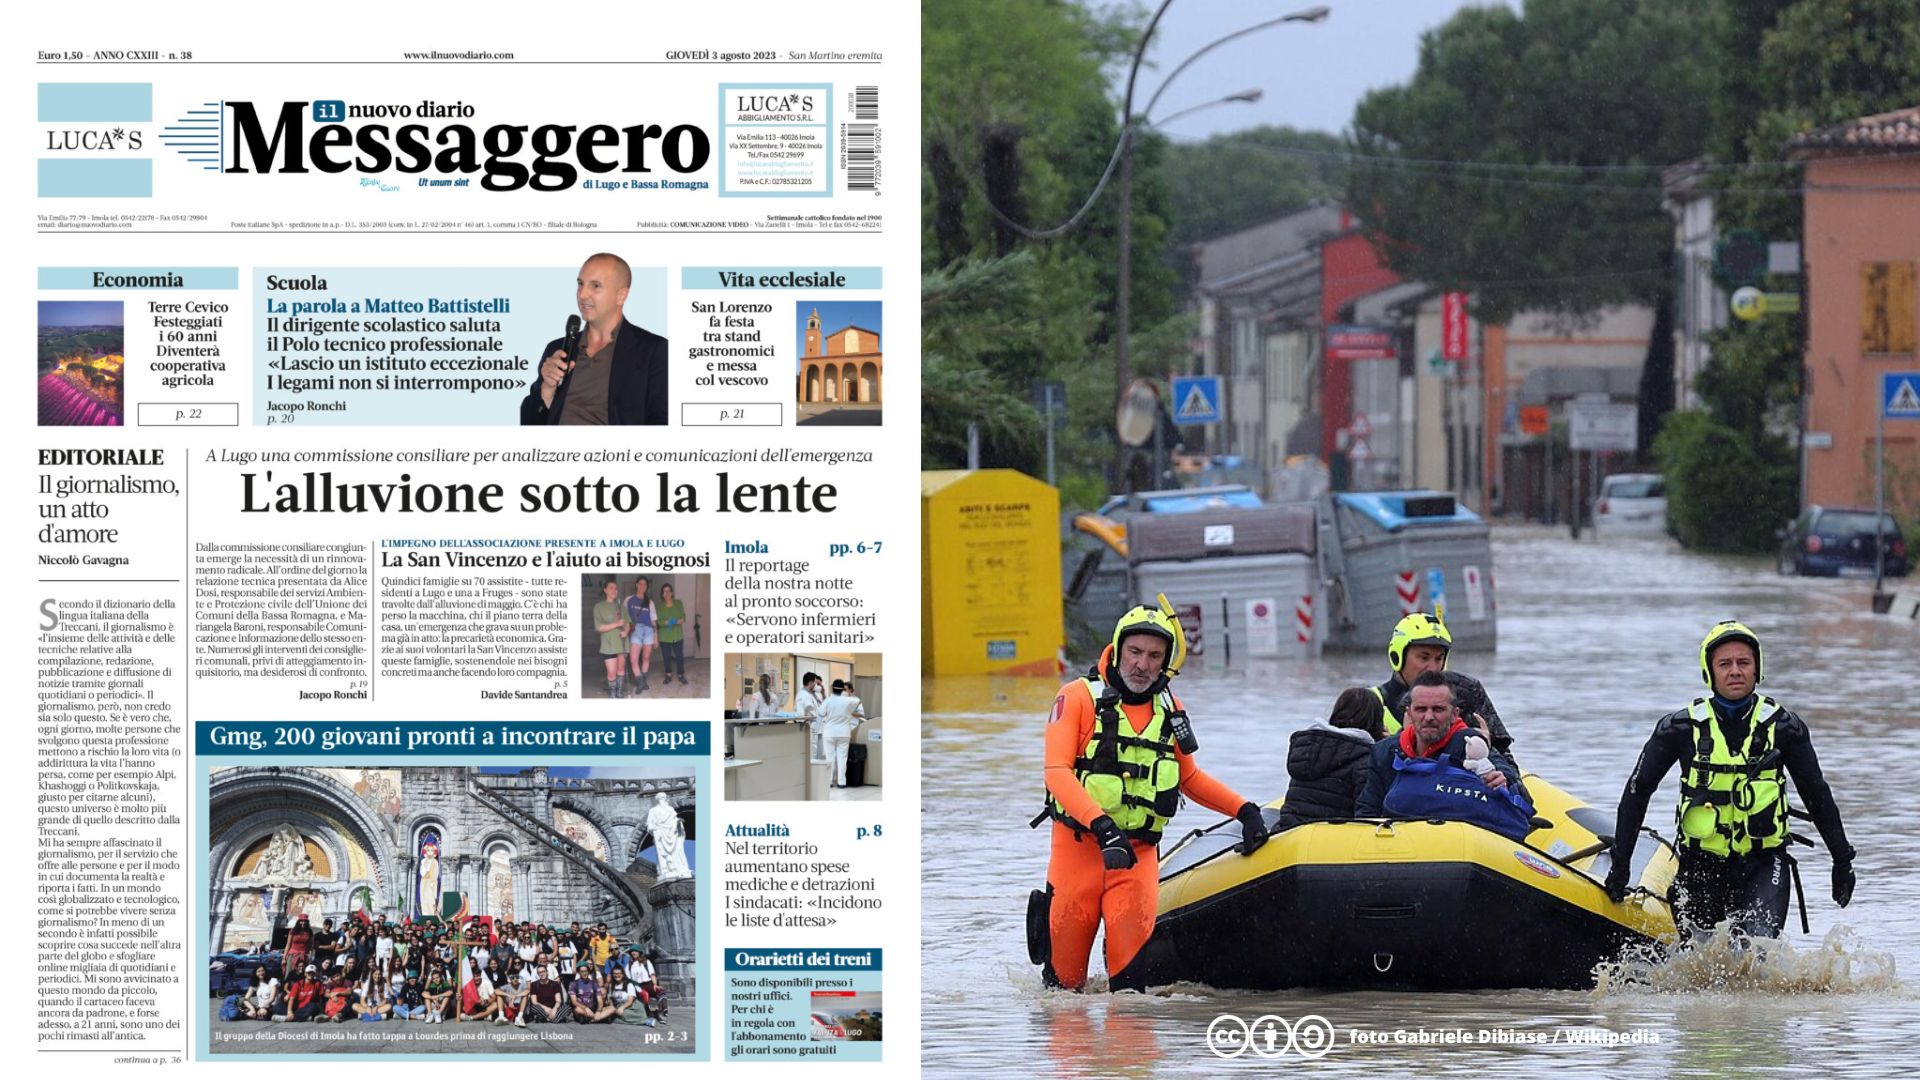 La San Vincenzo dopo l'alluvione: nessuno resti solo